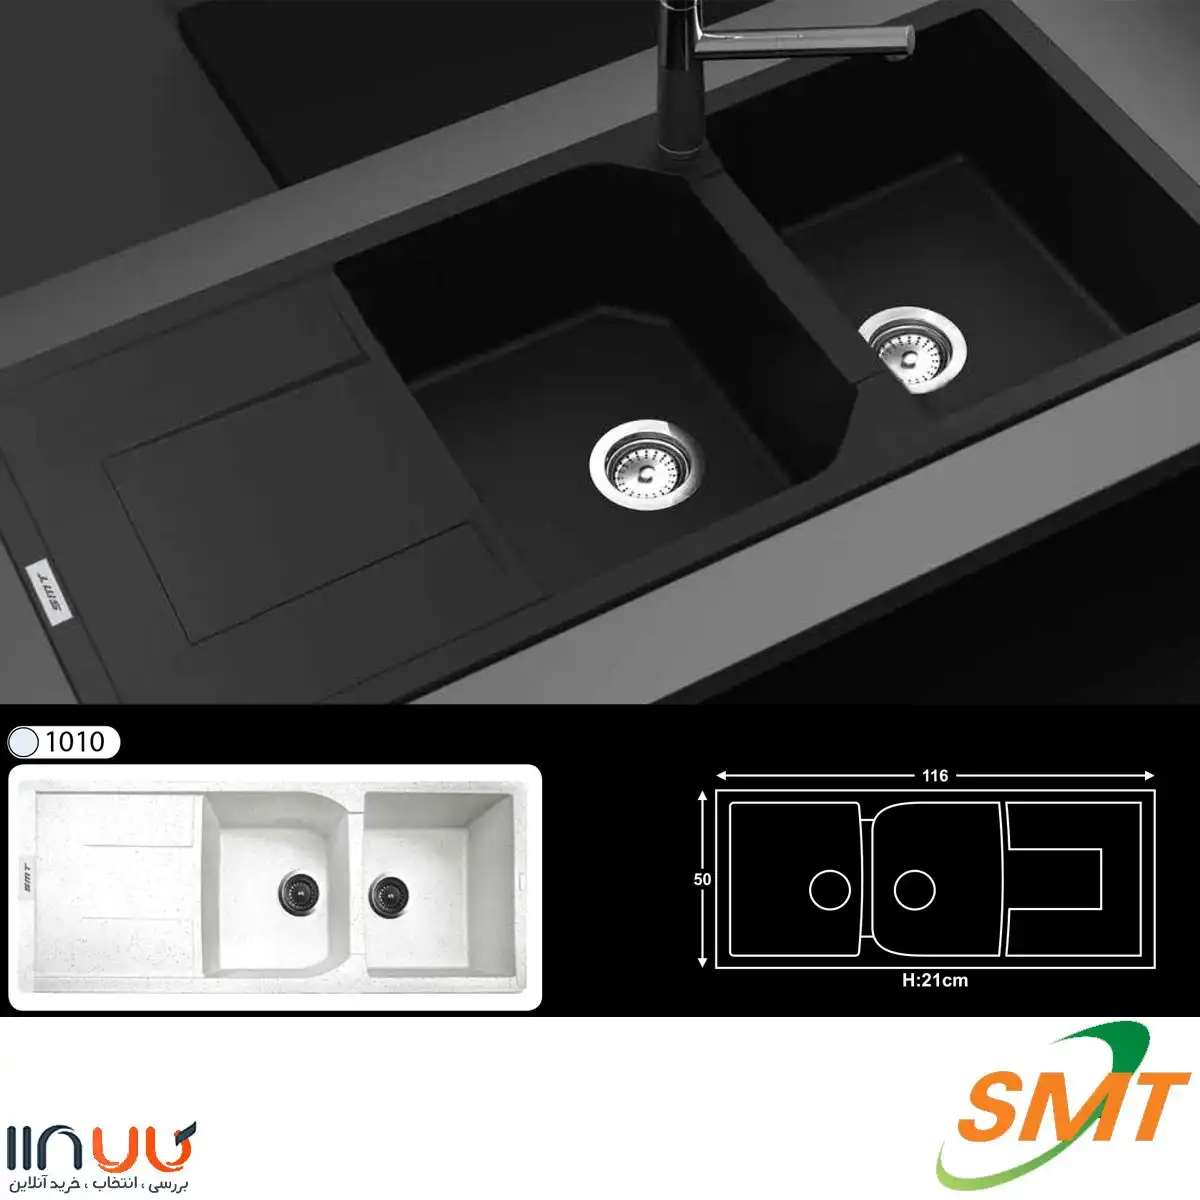 سینک ظرفشویی گرانیتی توکار SMT کد G850